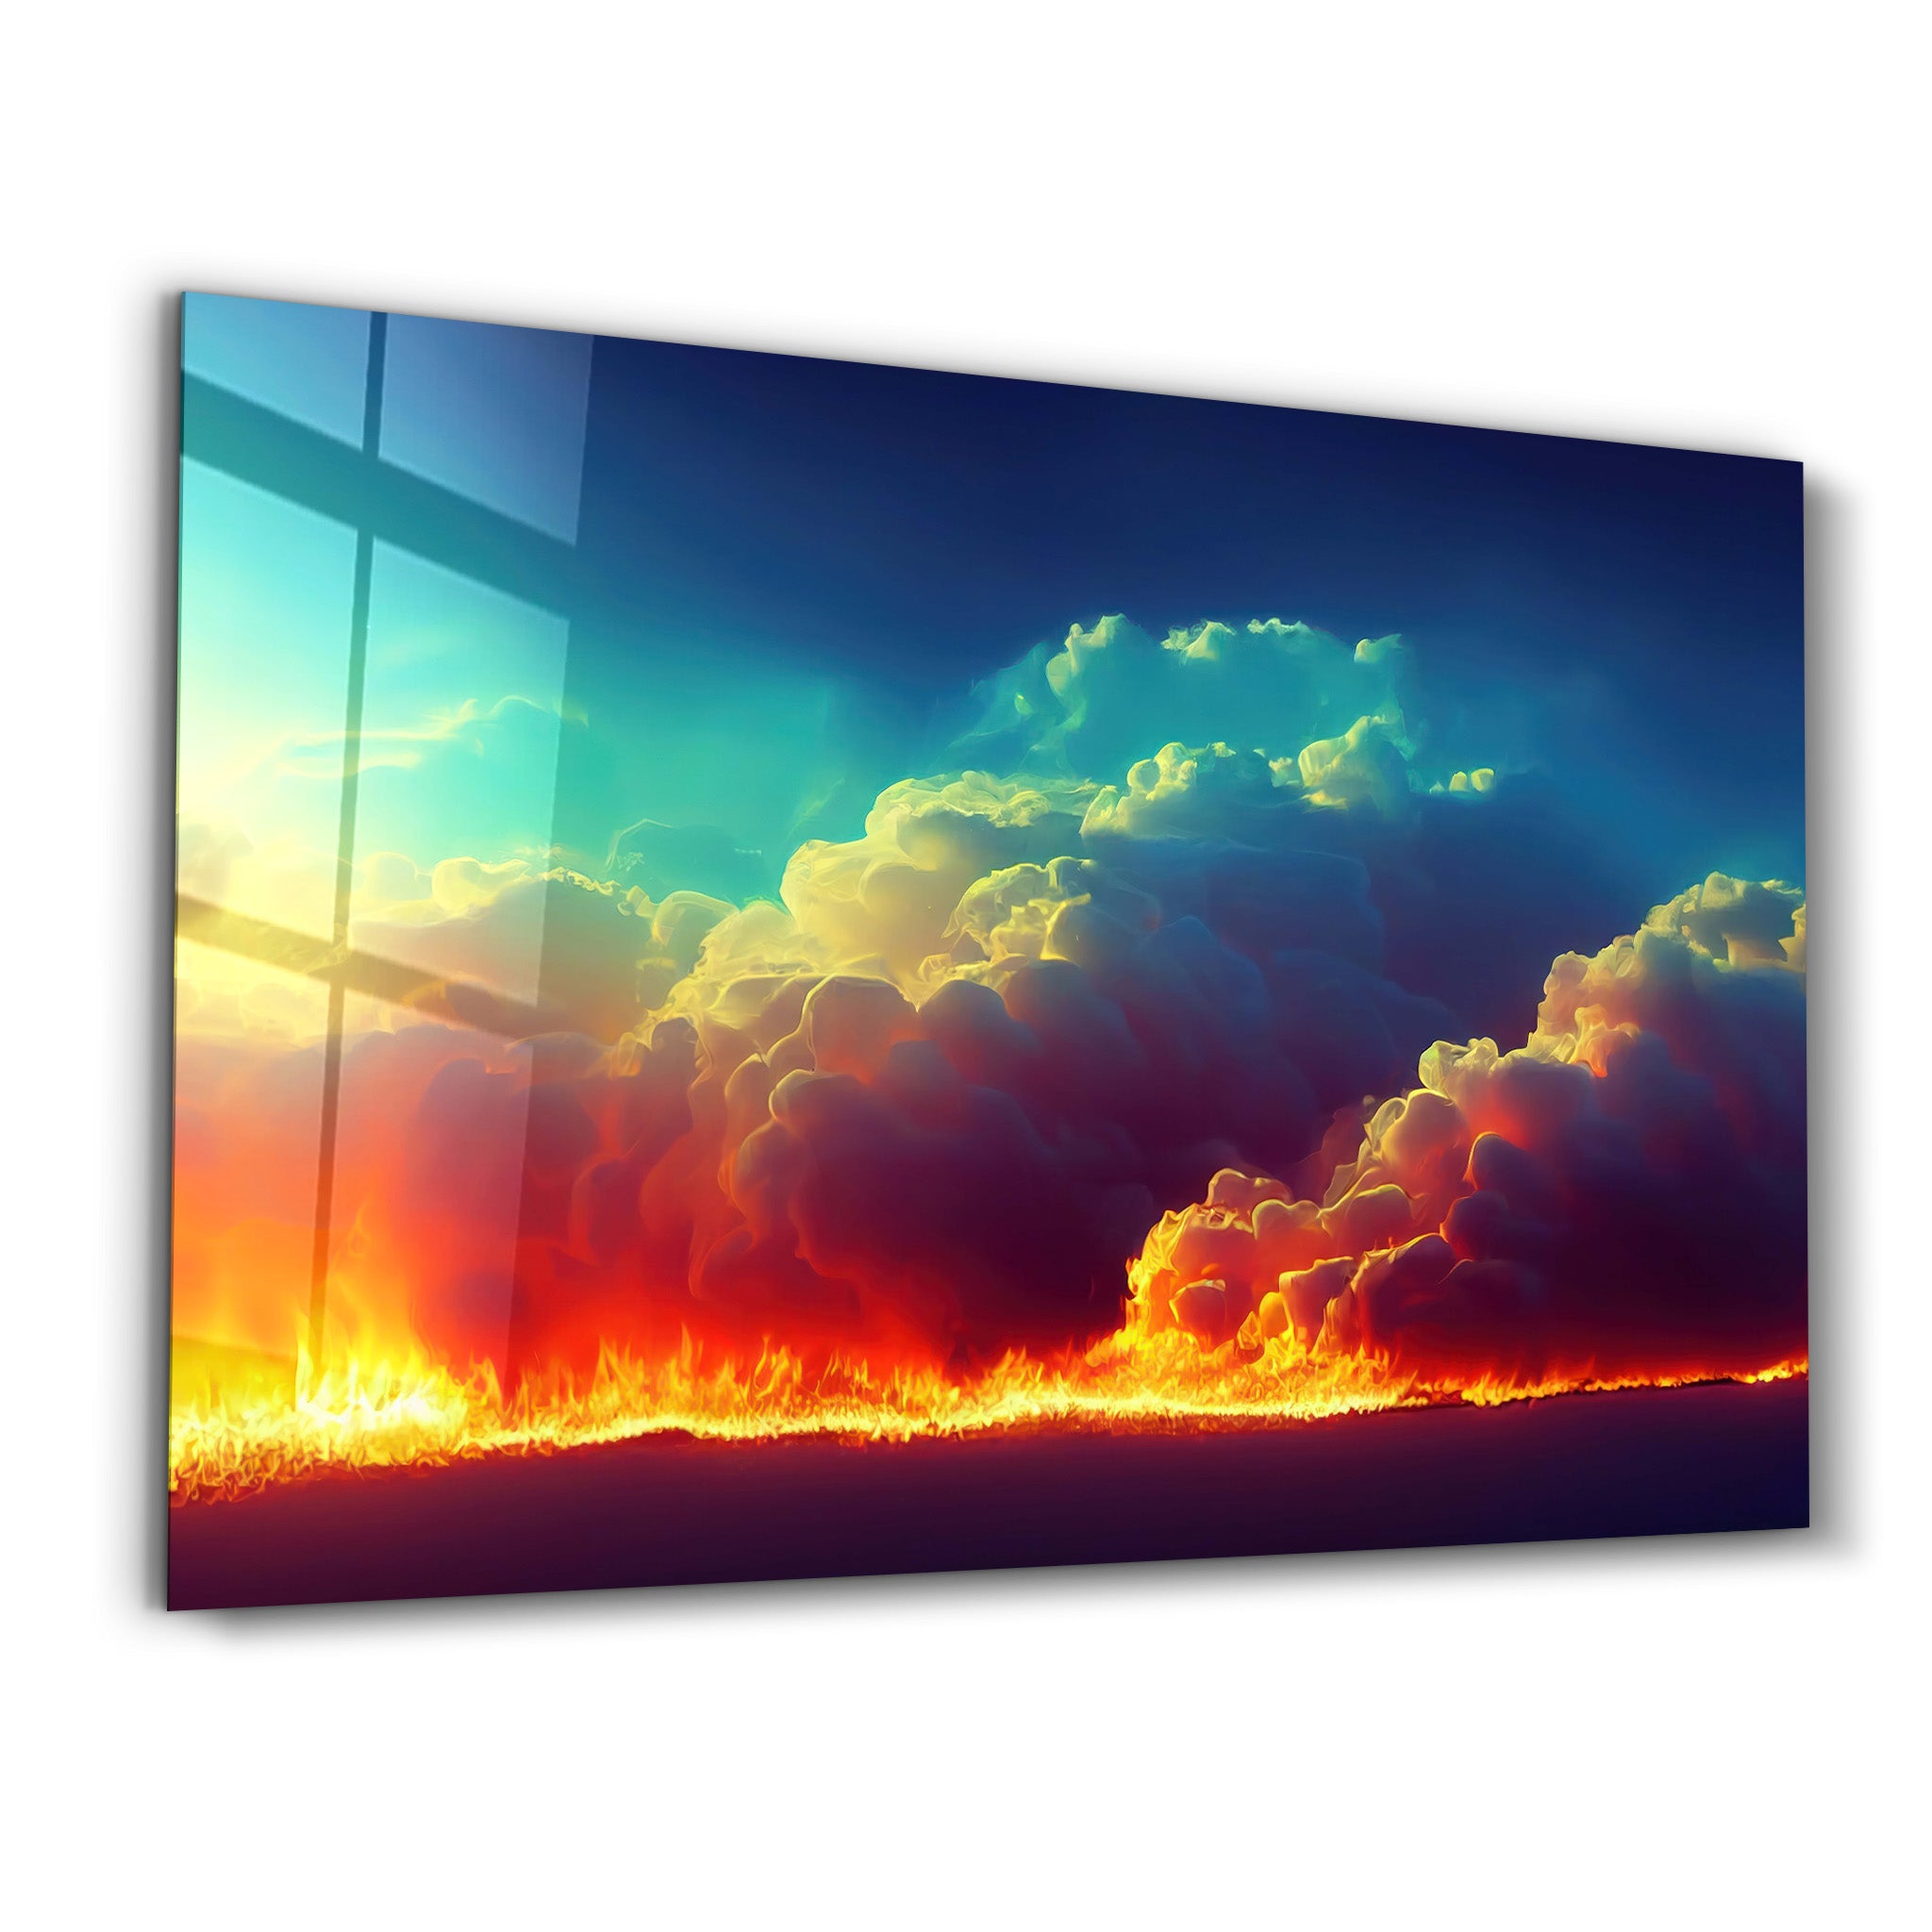 ・"Fire Clouds"・Motivational Glass Wall Art - ArtDesigna Glass Printing Wall Art